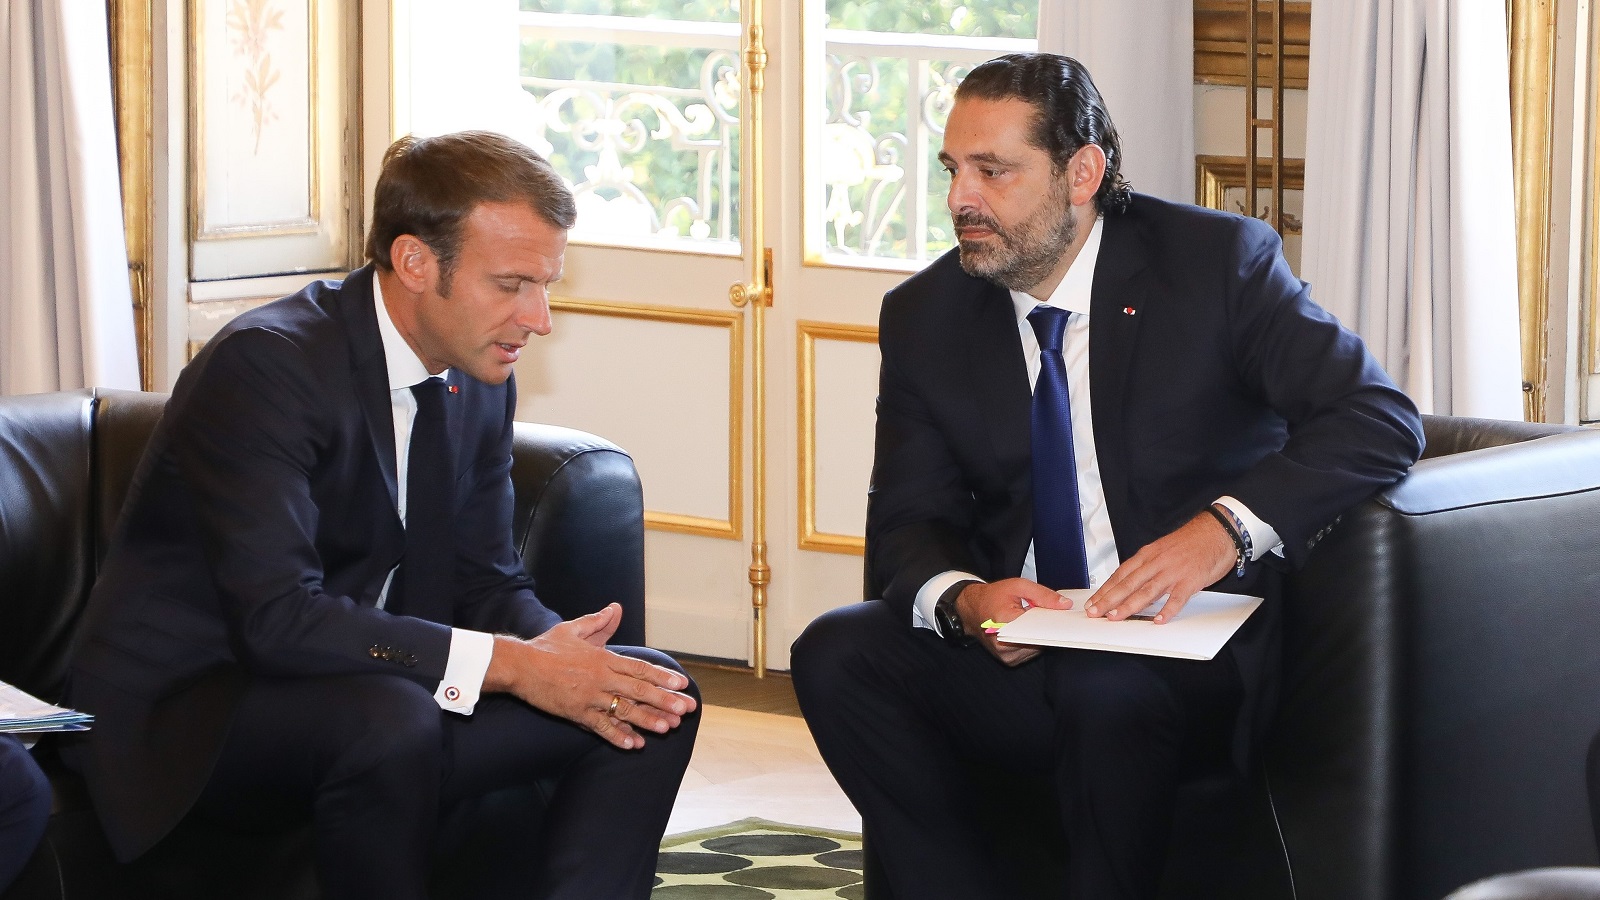 ماكرون والحريري: خوف فرنسي على لبنان من سياسييه ومقاوليه